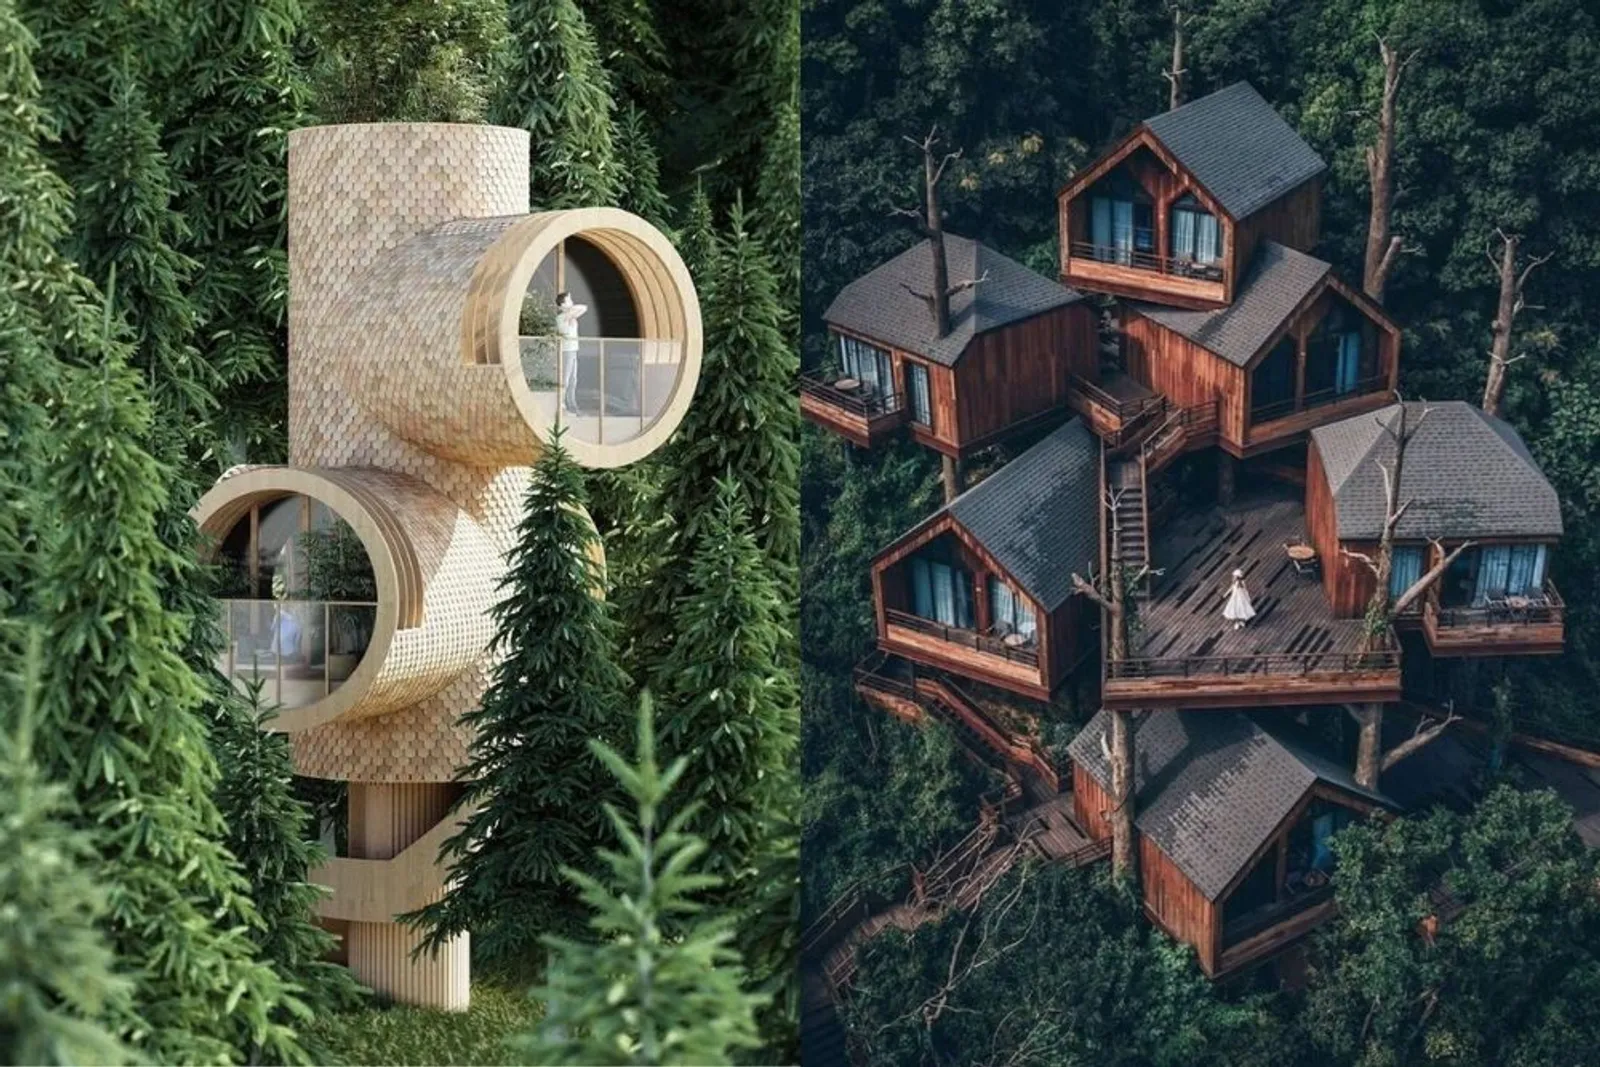 9 Desain Rumah Ini Kelewat Unik, Menghuninya Terasa Jadi Impian Saja